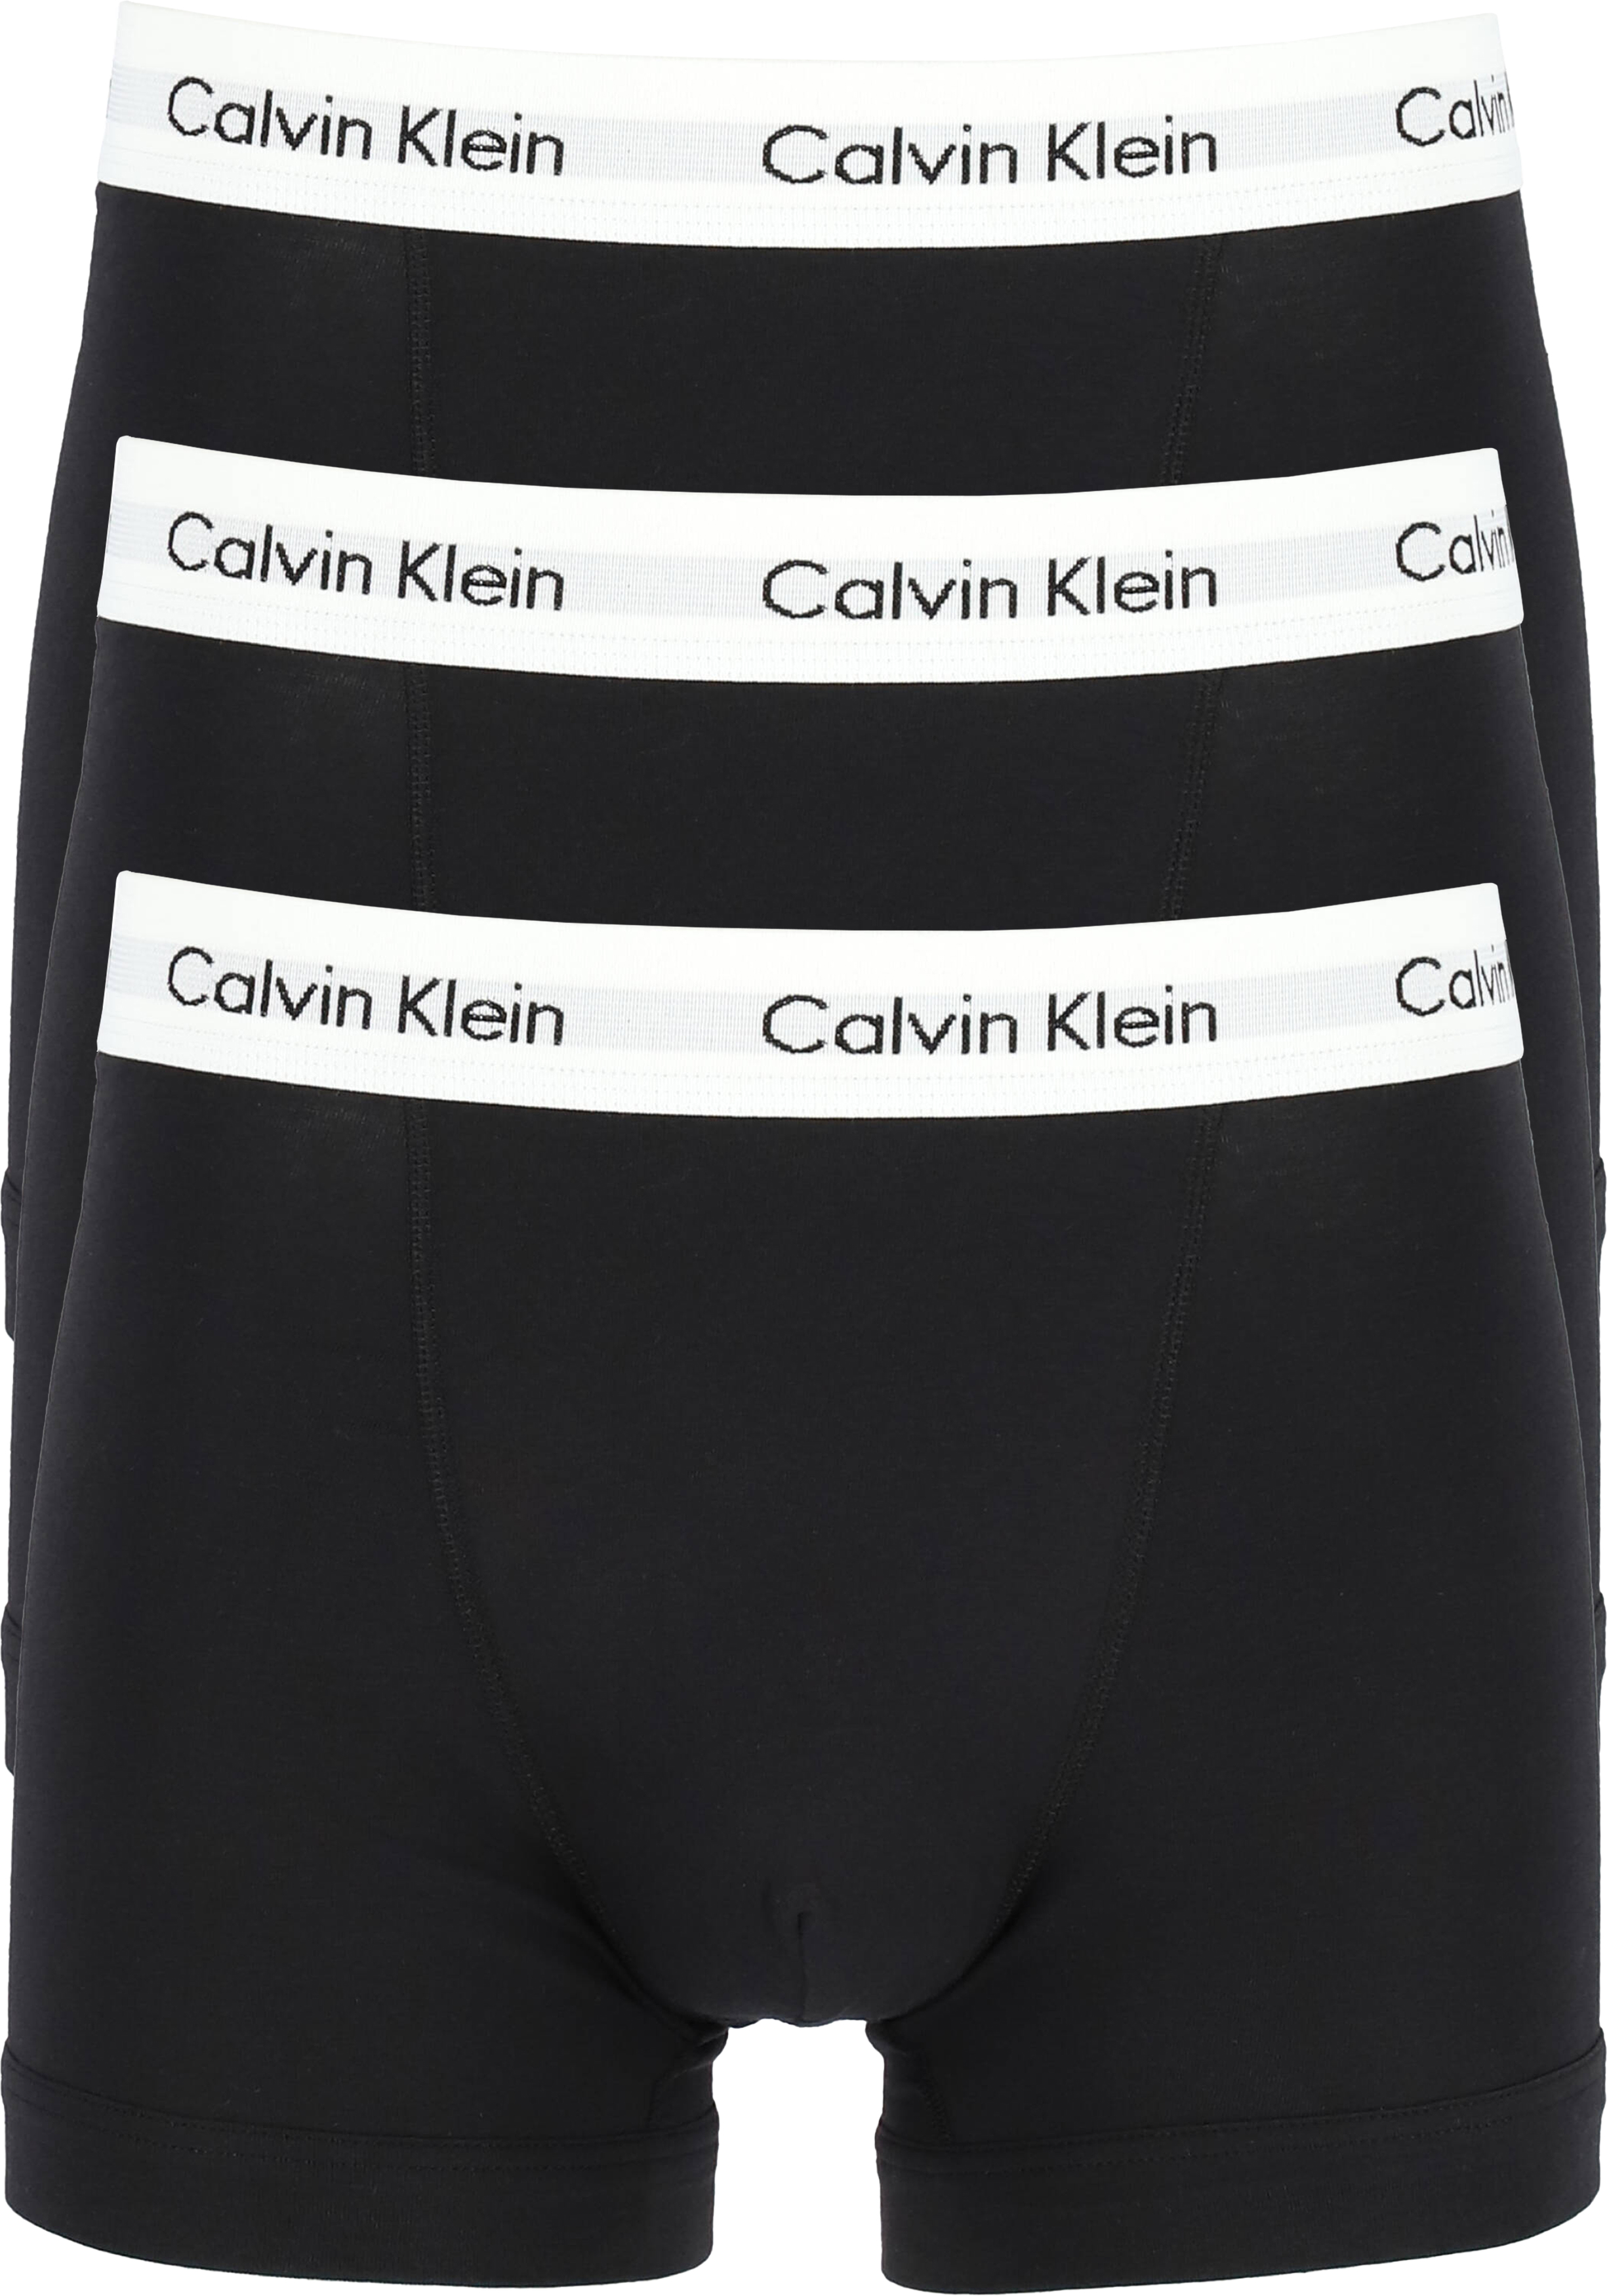 Overleg sirene Normaal gesproken Calvin Klein Trunks (3-pack), zwart - Gratis bezorgd